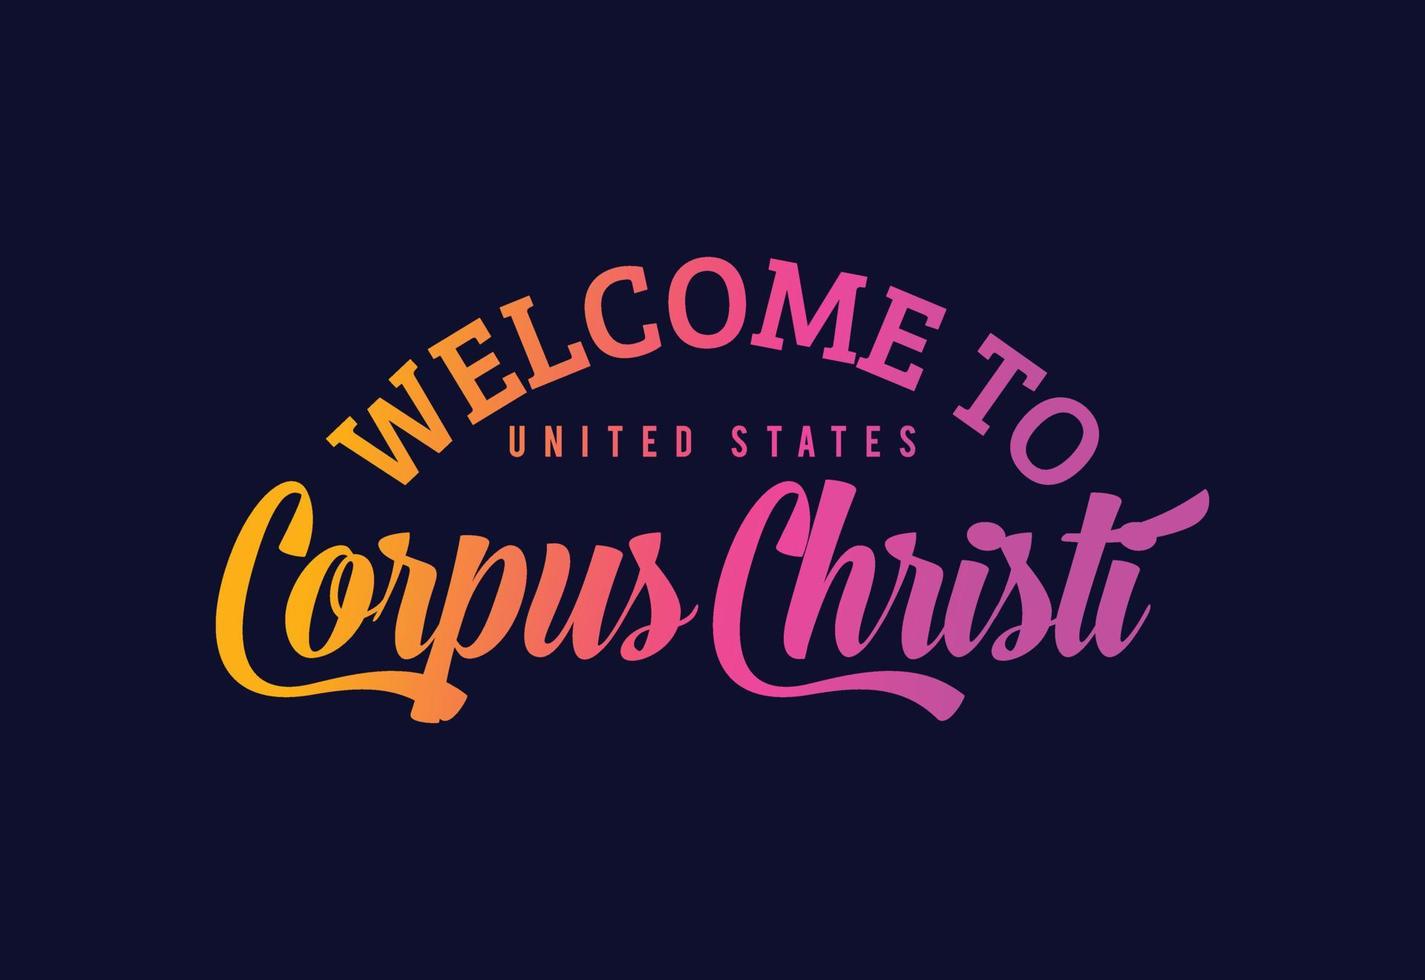 bem-vindo ao corpus christi palavra texto criativo fonte design ilustração. sinal de boas-vindas vetor